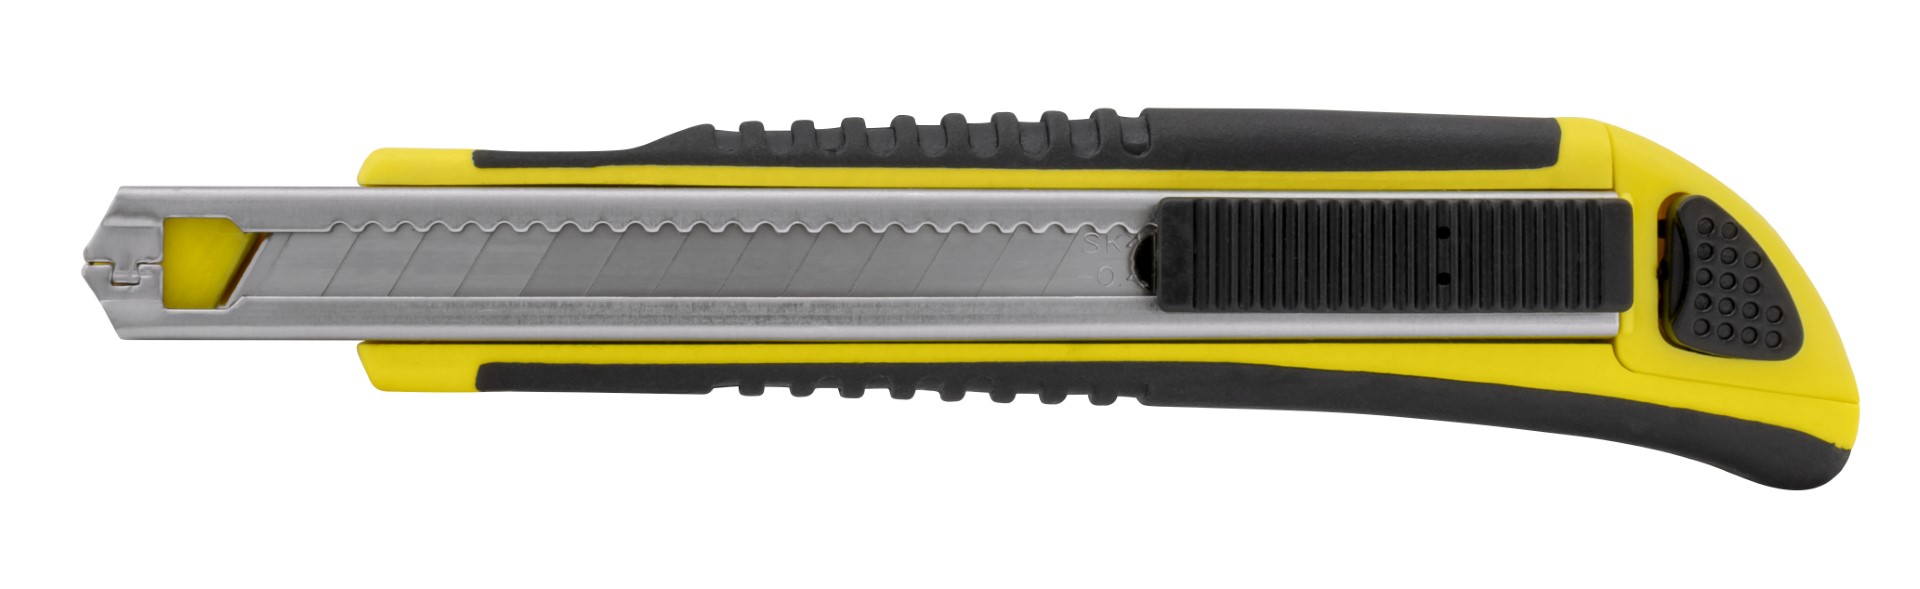 Kniv med Non-Slip gummihåndtak, 9 mm knivblad, Automatisk lås og magasin 2 ekstra knivblader 410002